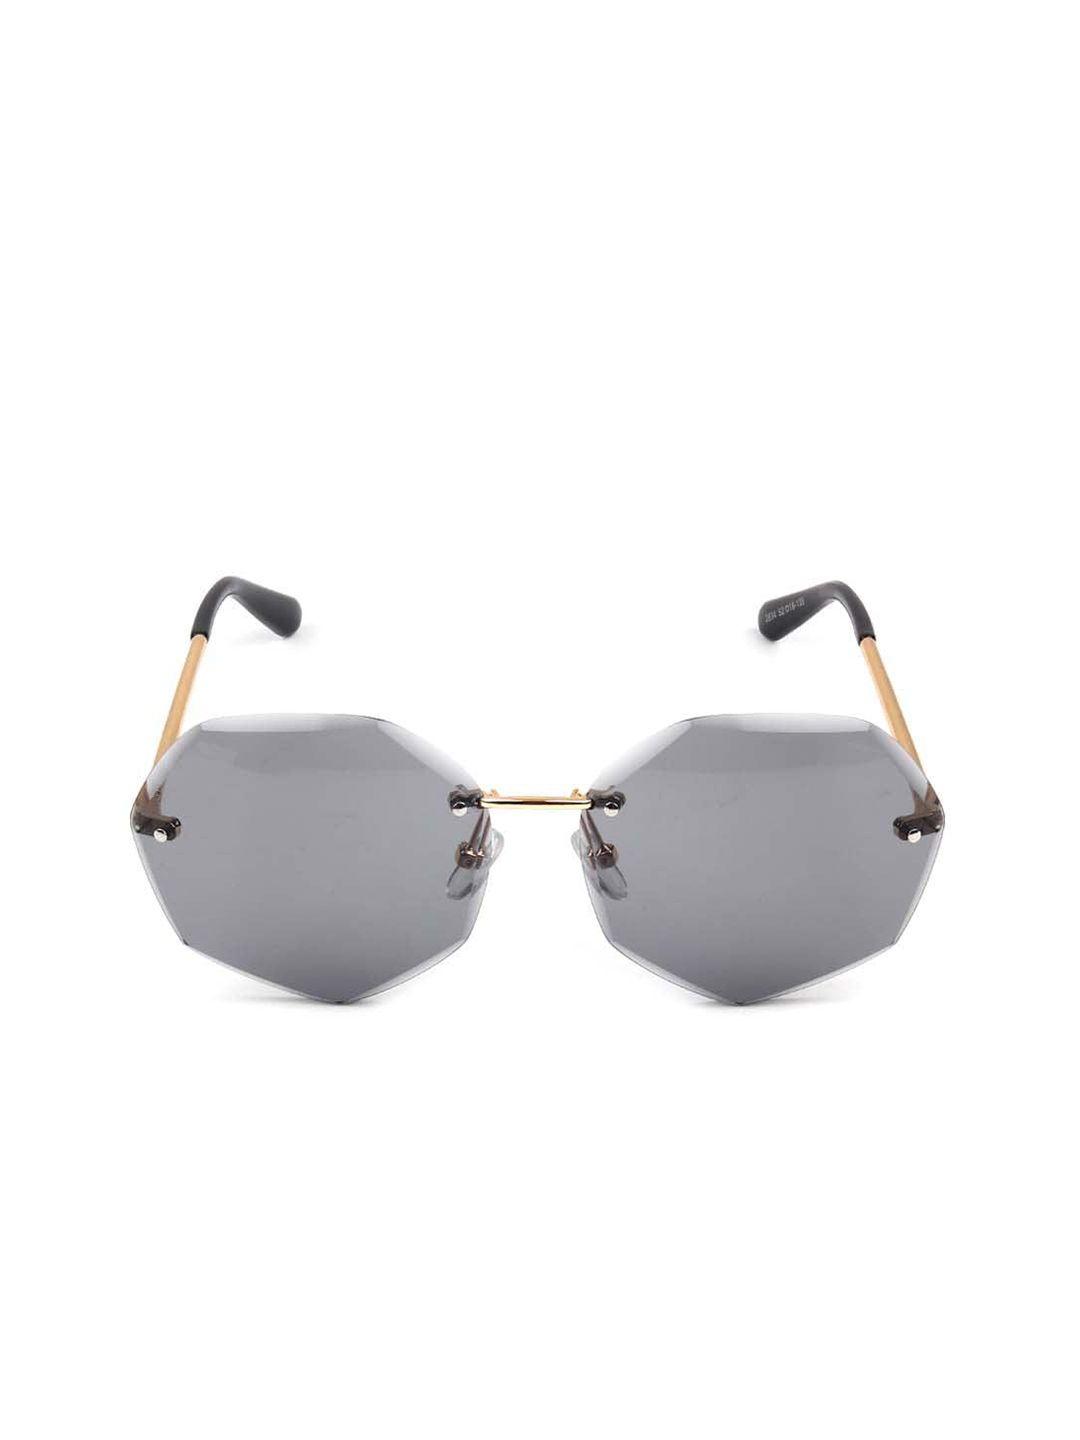 odette-women-lens-&-oversized-sunglasses-with-uv-protected-lens